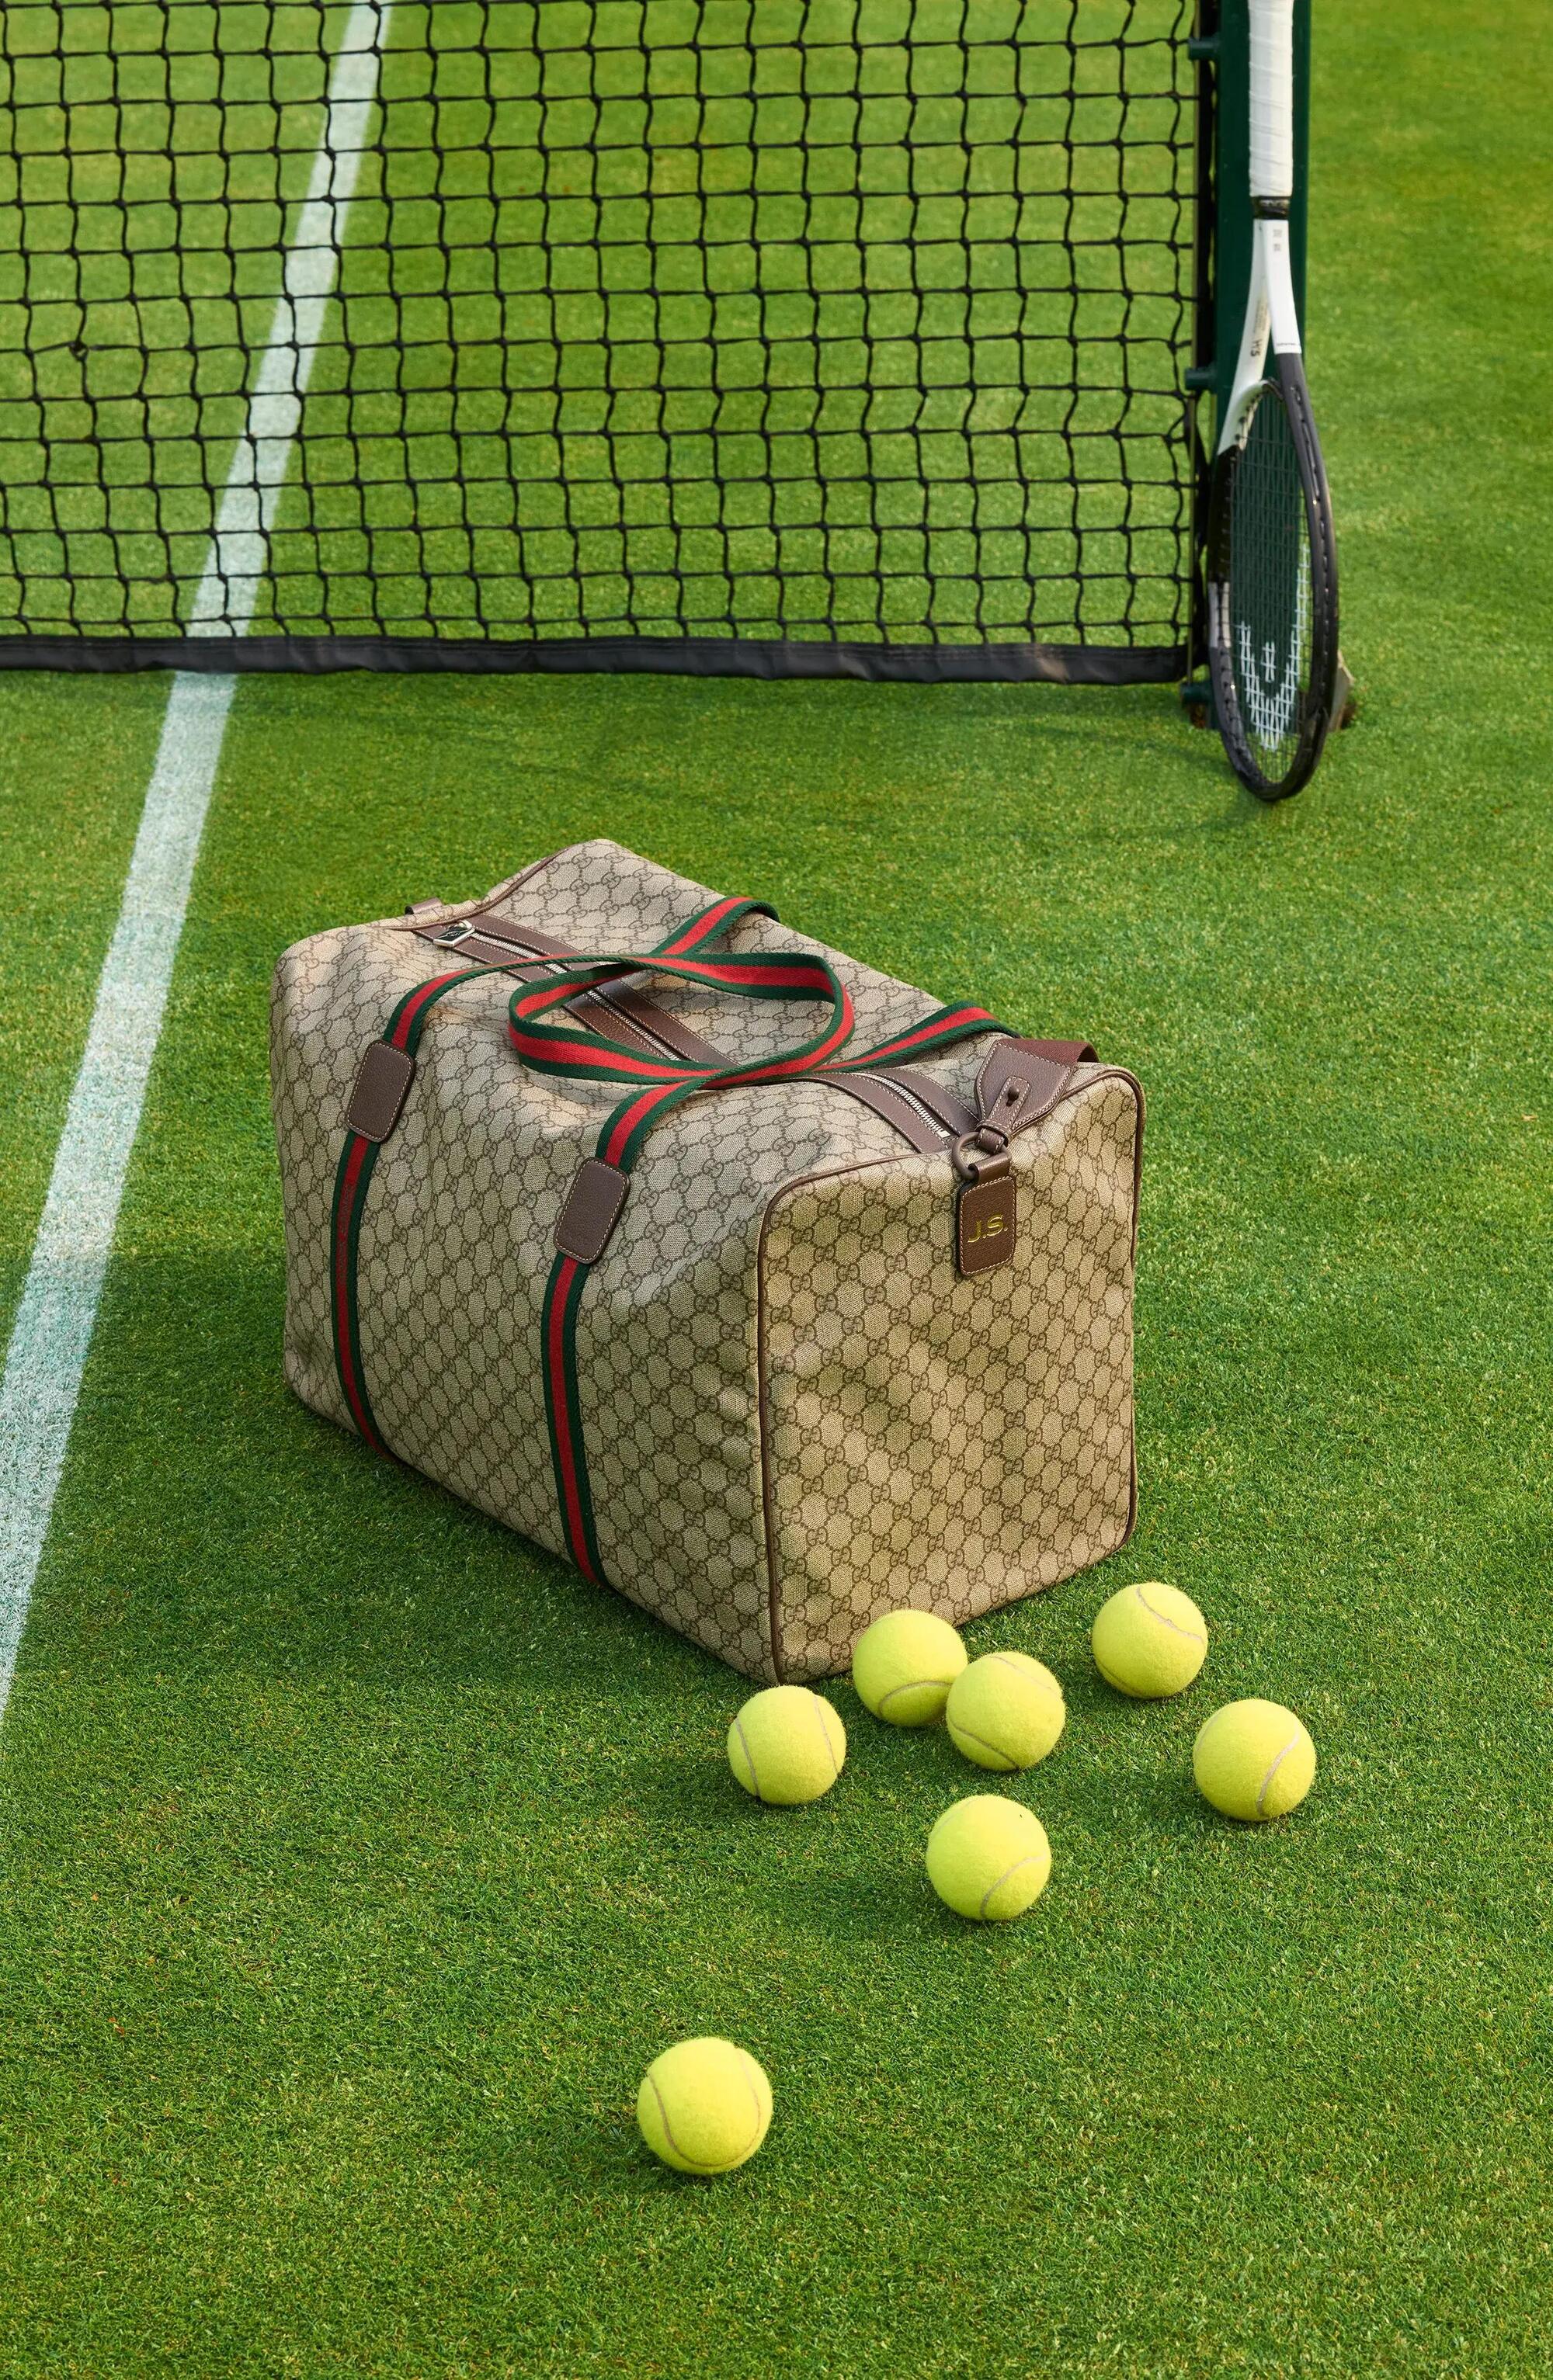 Il borsone Gucci utilizzato da Jannik Sinner a Wimbledon